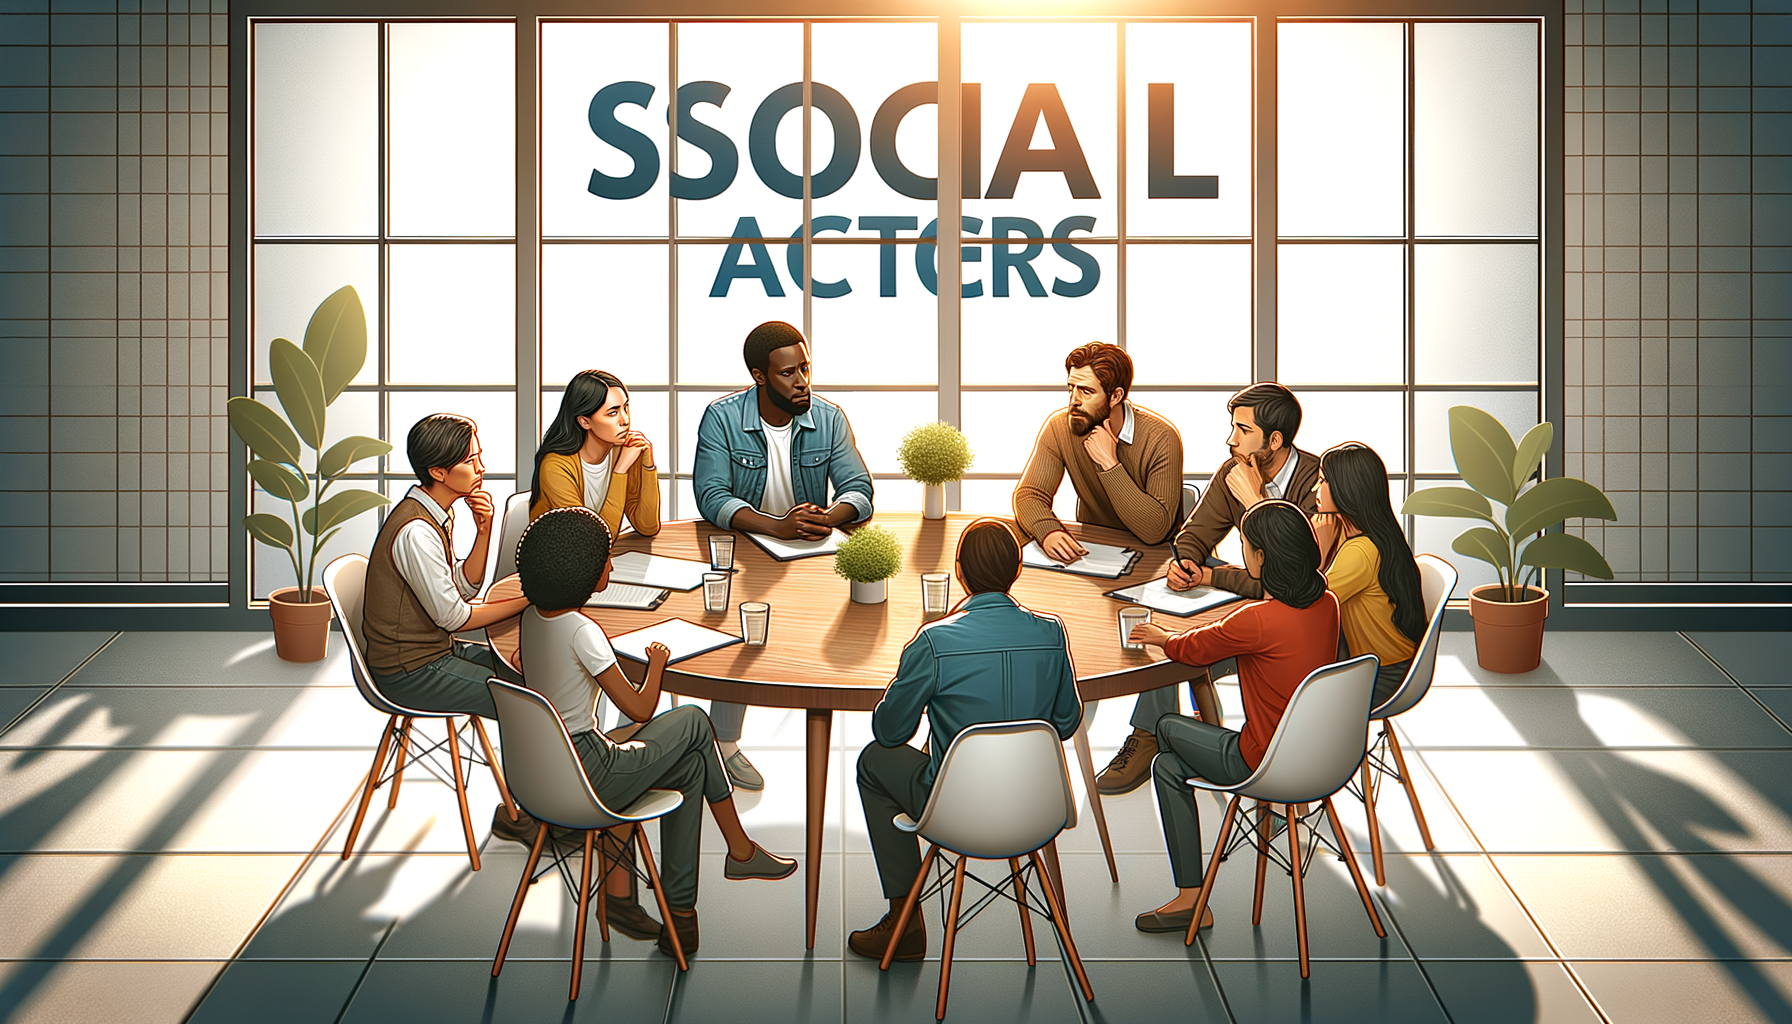 Actores sociales